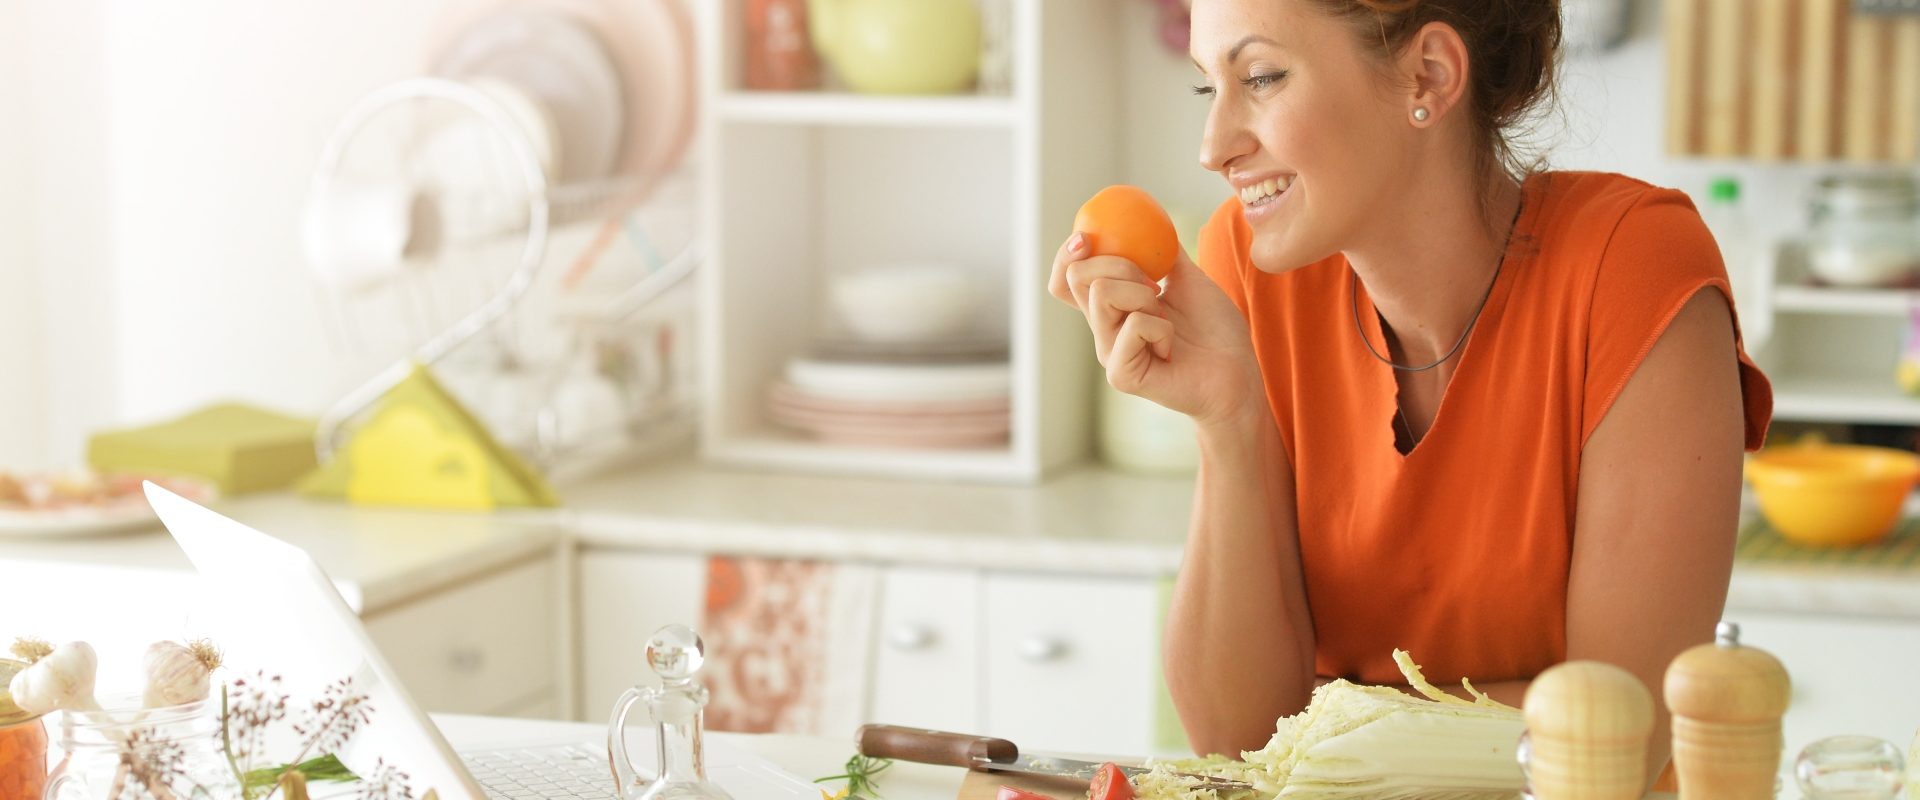 Naturalne sposoby na oczyszczenie wątroby. Kobieta w pomarańczowej bluzce opiera się łokciami o blat w kuchni i trzyma w dłoni mandarynkę. Wokół rozłożone warzywa i owoce.